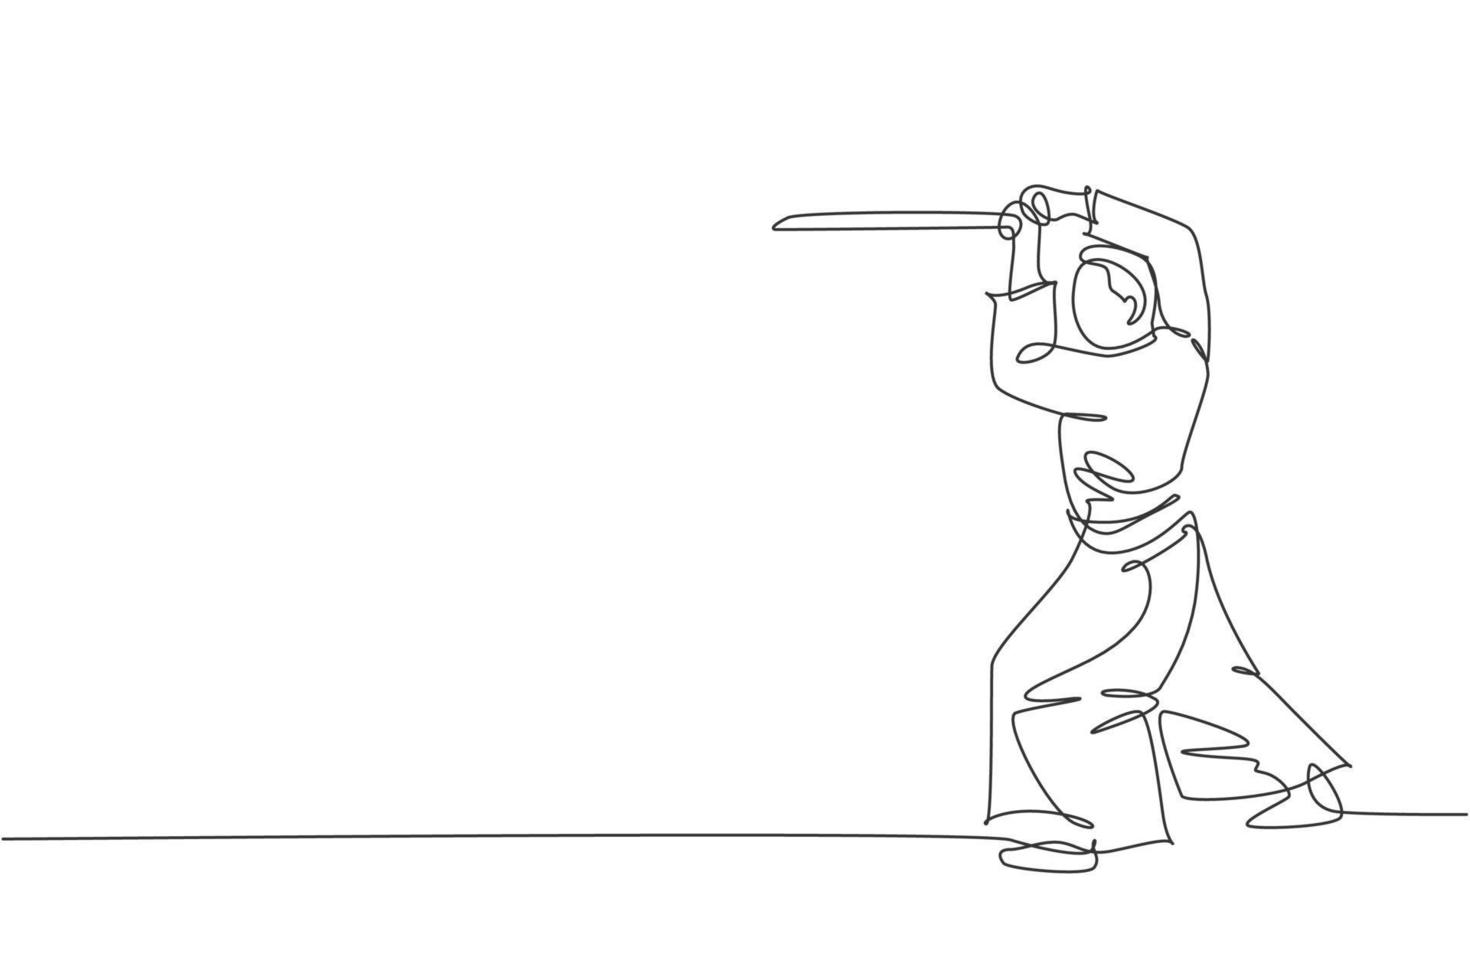 un disegno a tratteggio di un giovane energico che indossa la tecnica dell'aikido di esercizio del kimono con la spada di legno nell'illustrazione vettoriale del palazzetto dello sport. concetto di sport stile di vita sano. disegno di disegno a linea continua